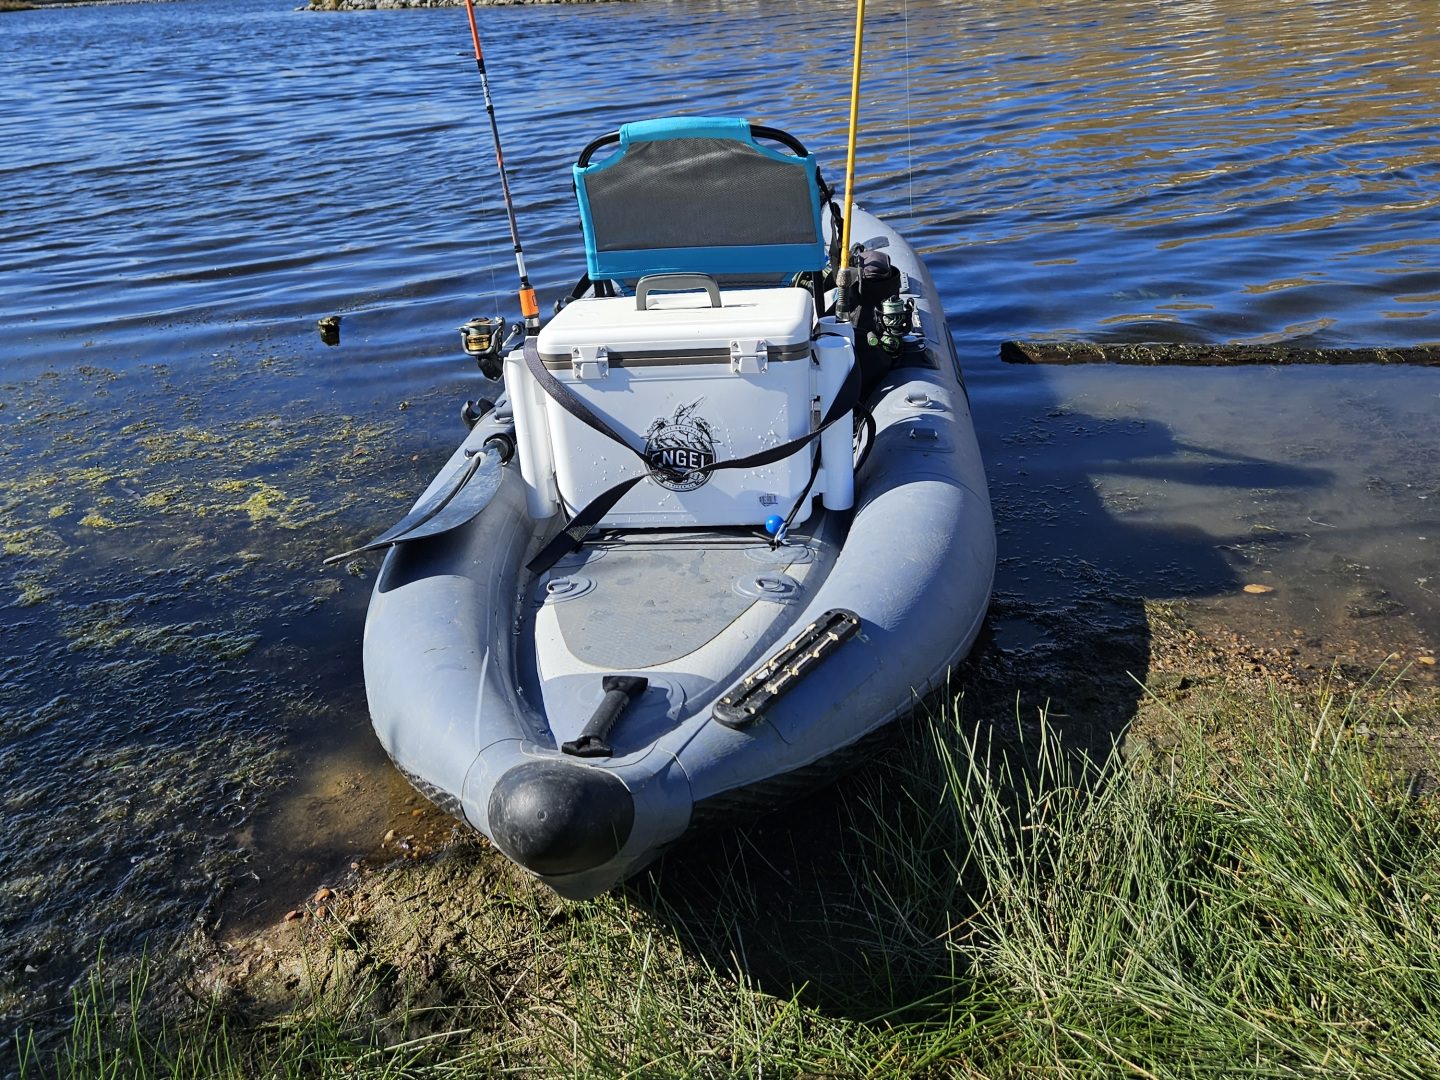 Inflatable Fishing Kayak Trolling Motor